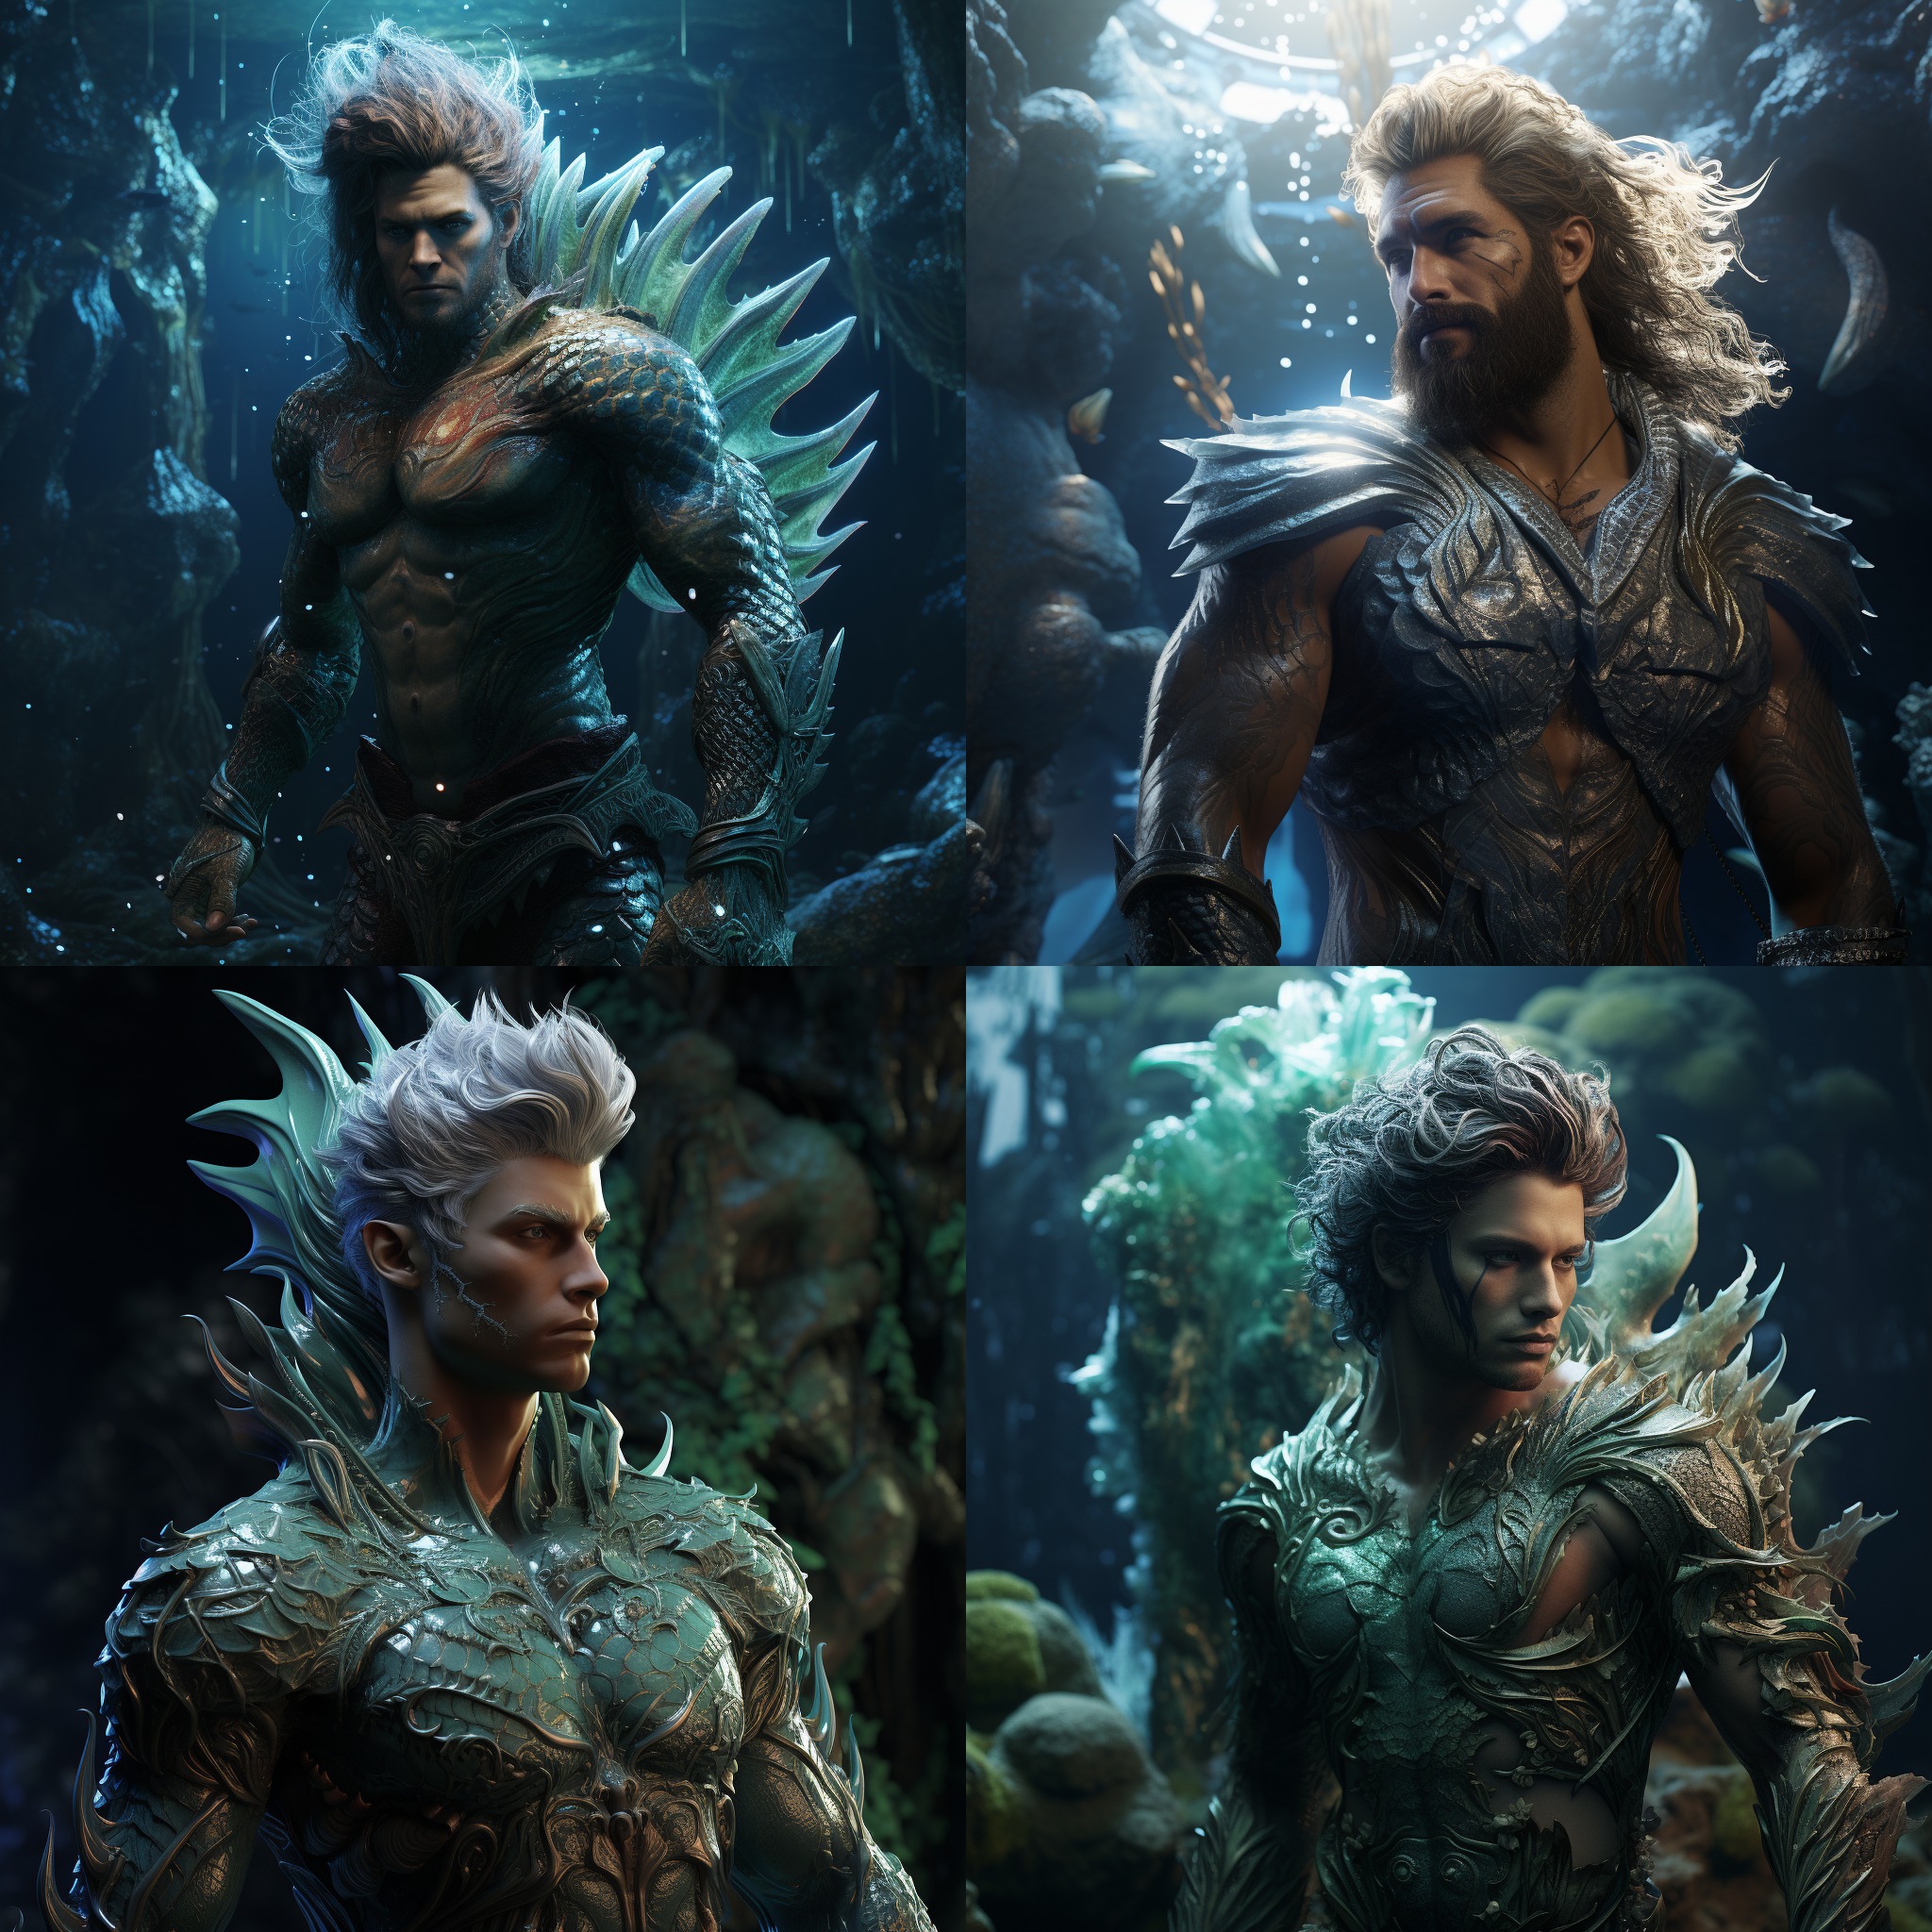 create a handsome merman in an underwater fantasy world